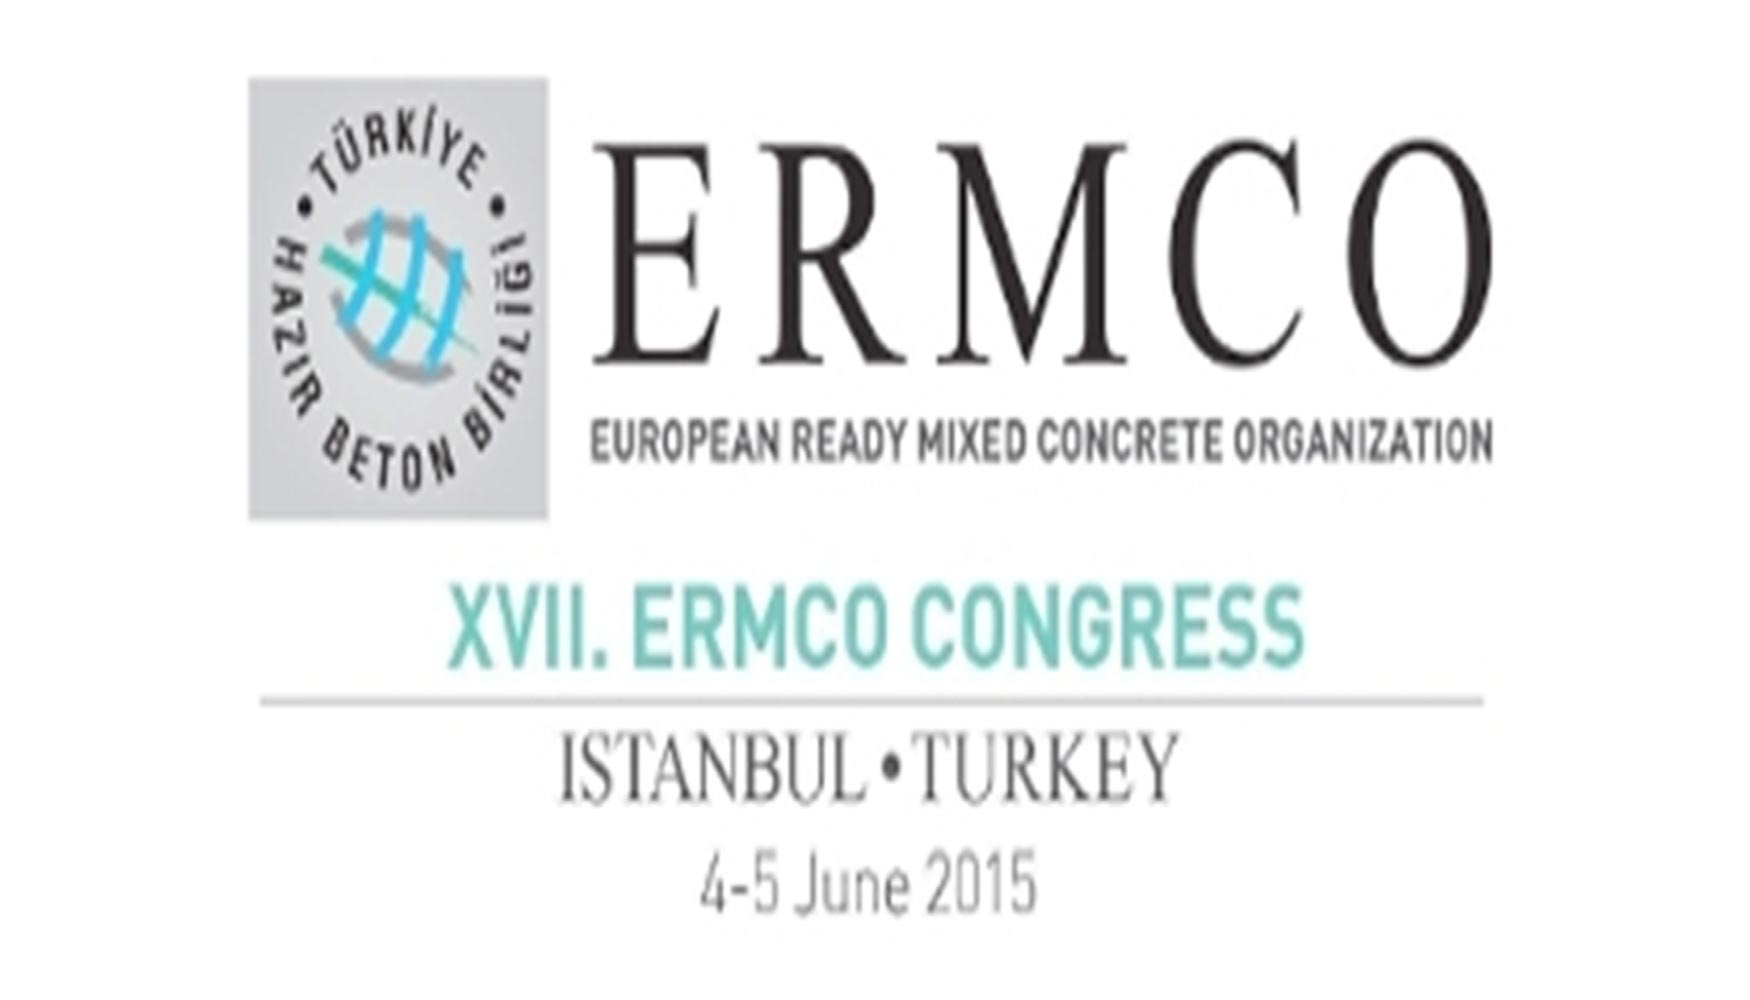 El XVII Congreso Ermco tendr lugar en el Museo Militar de Estambul